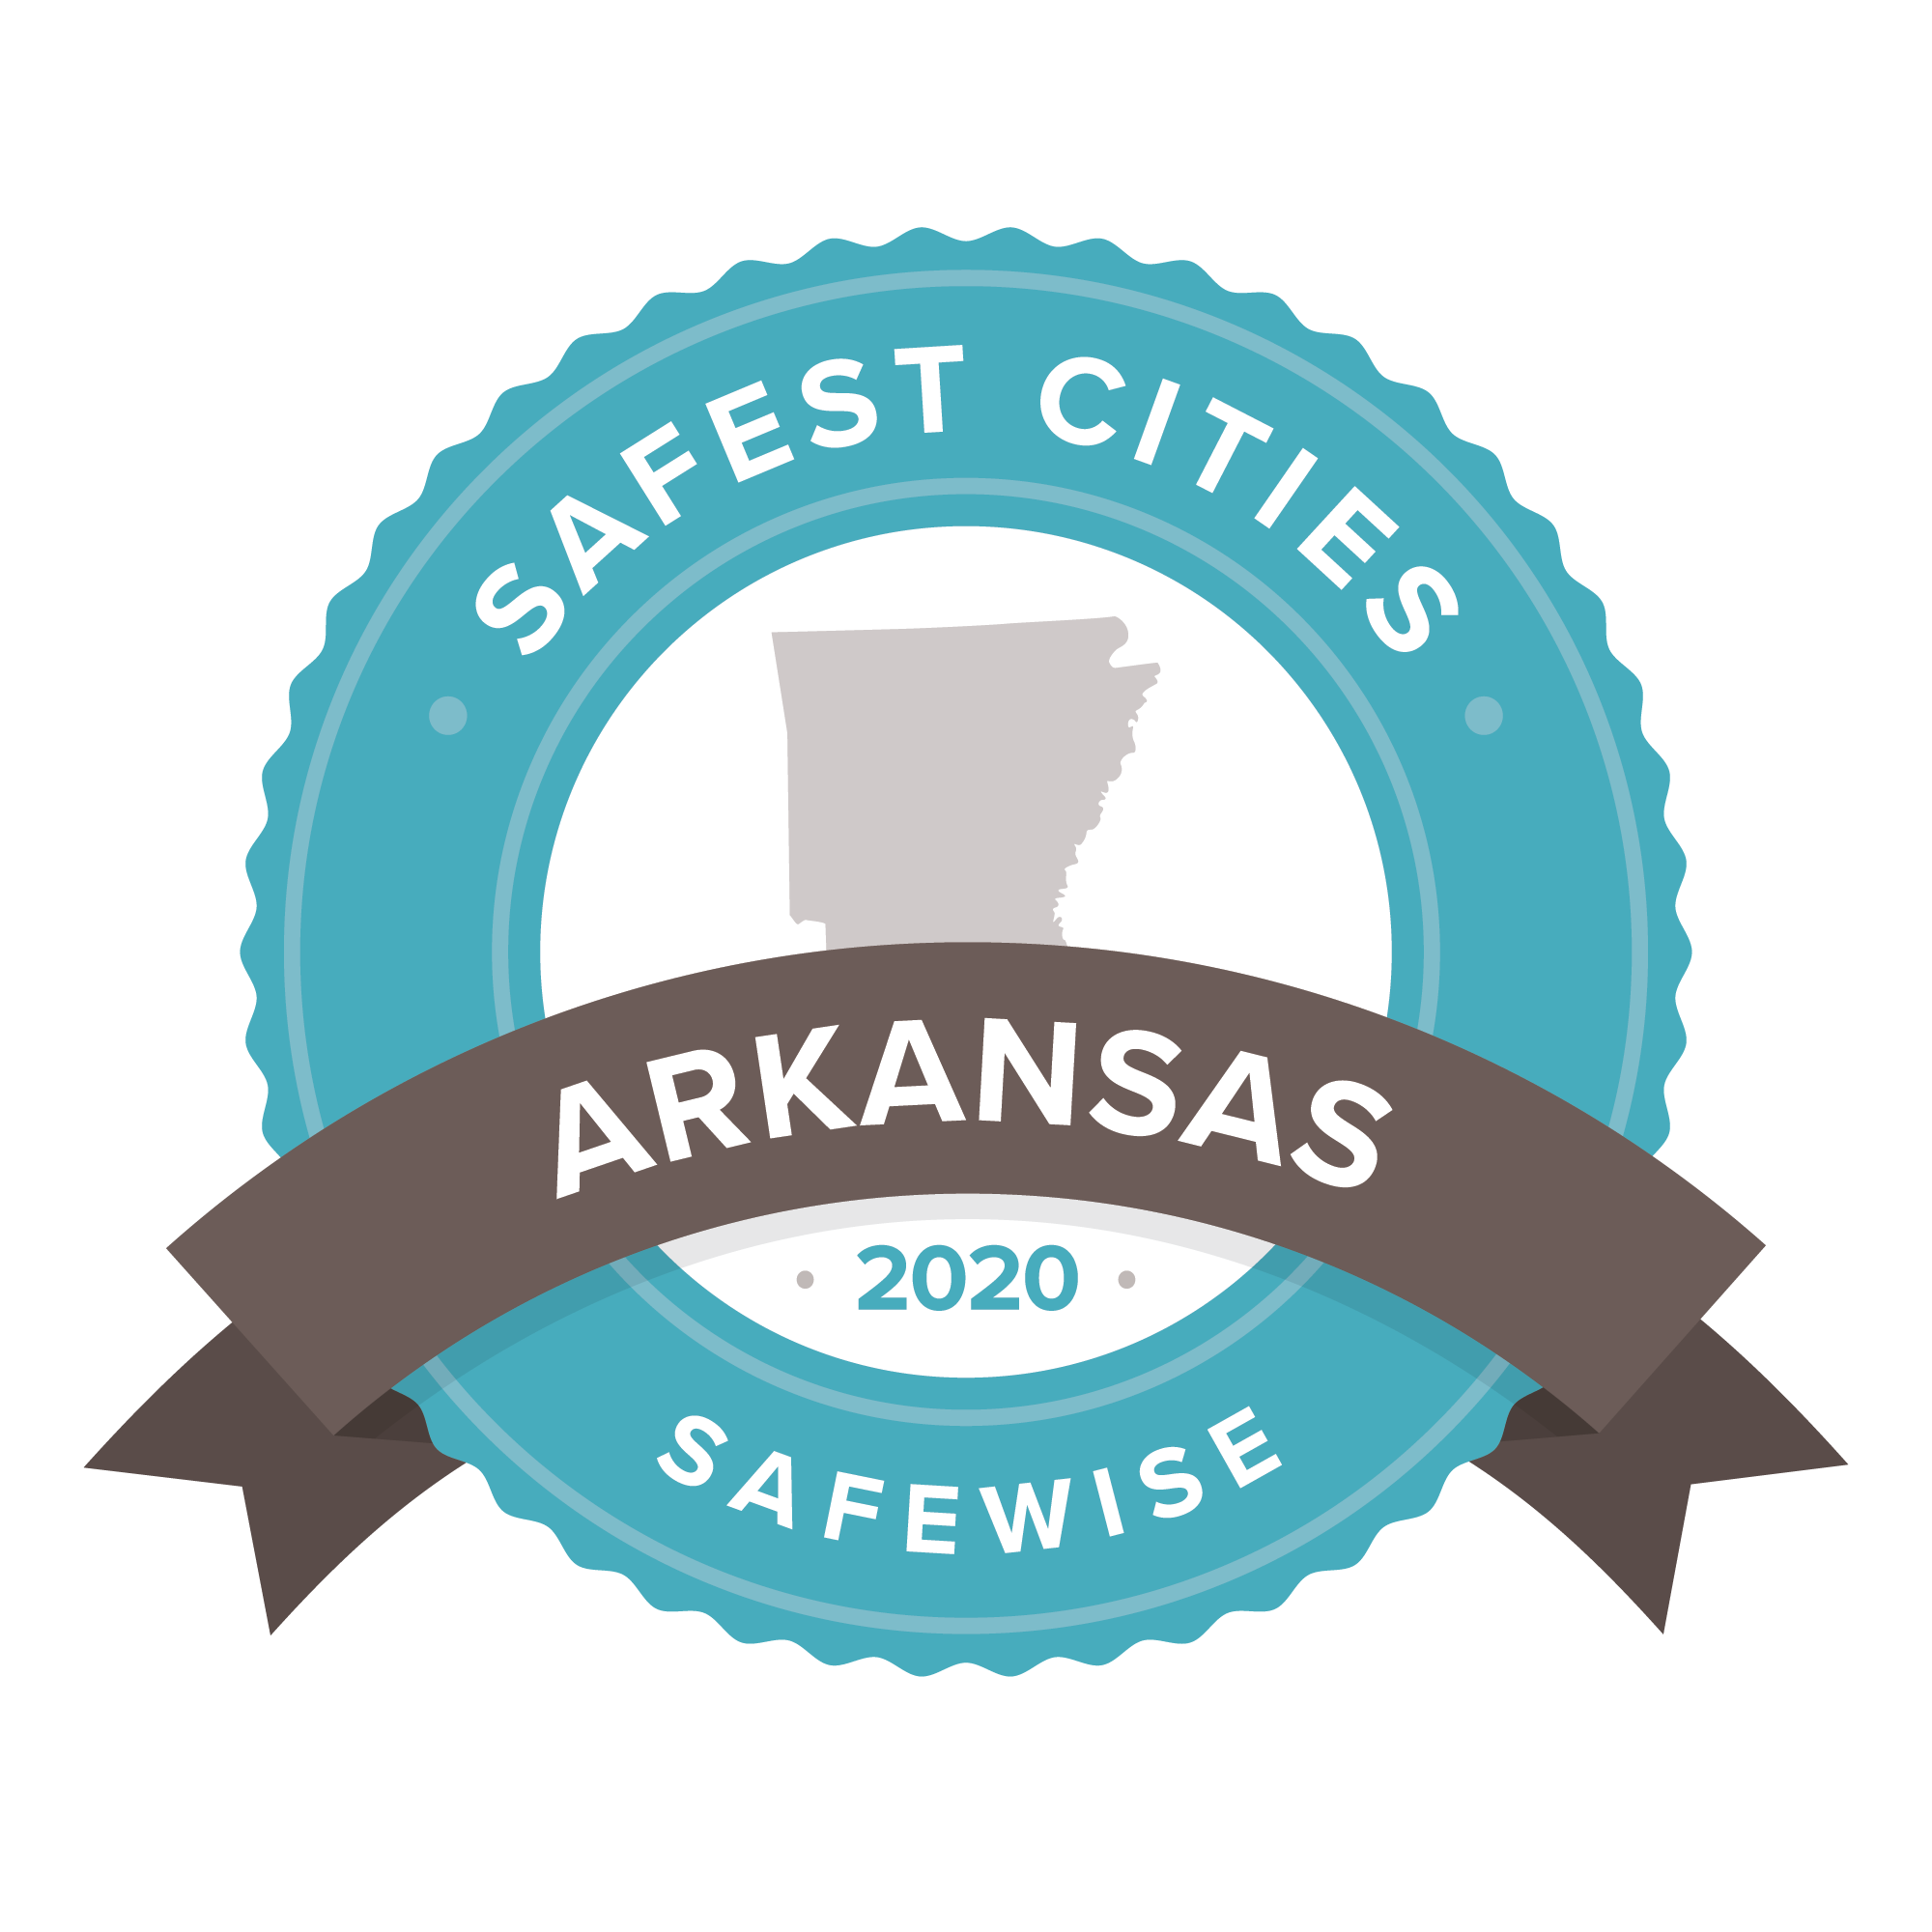 Safest City Logo